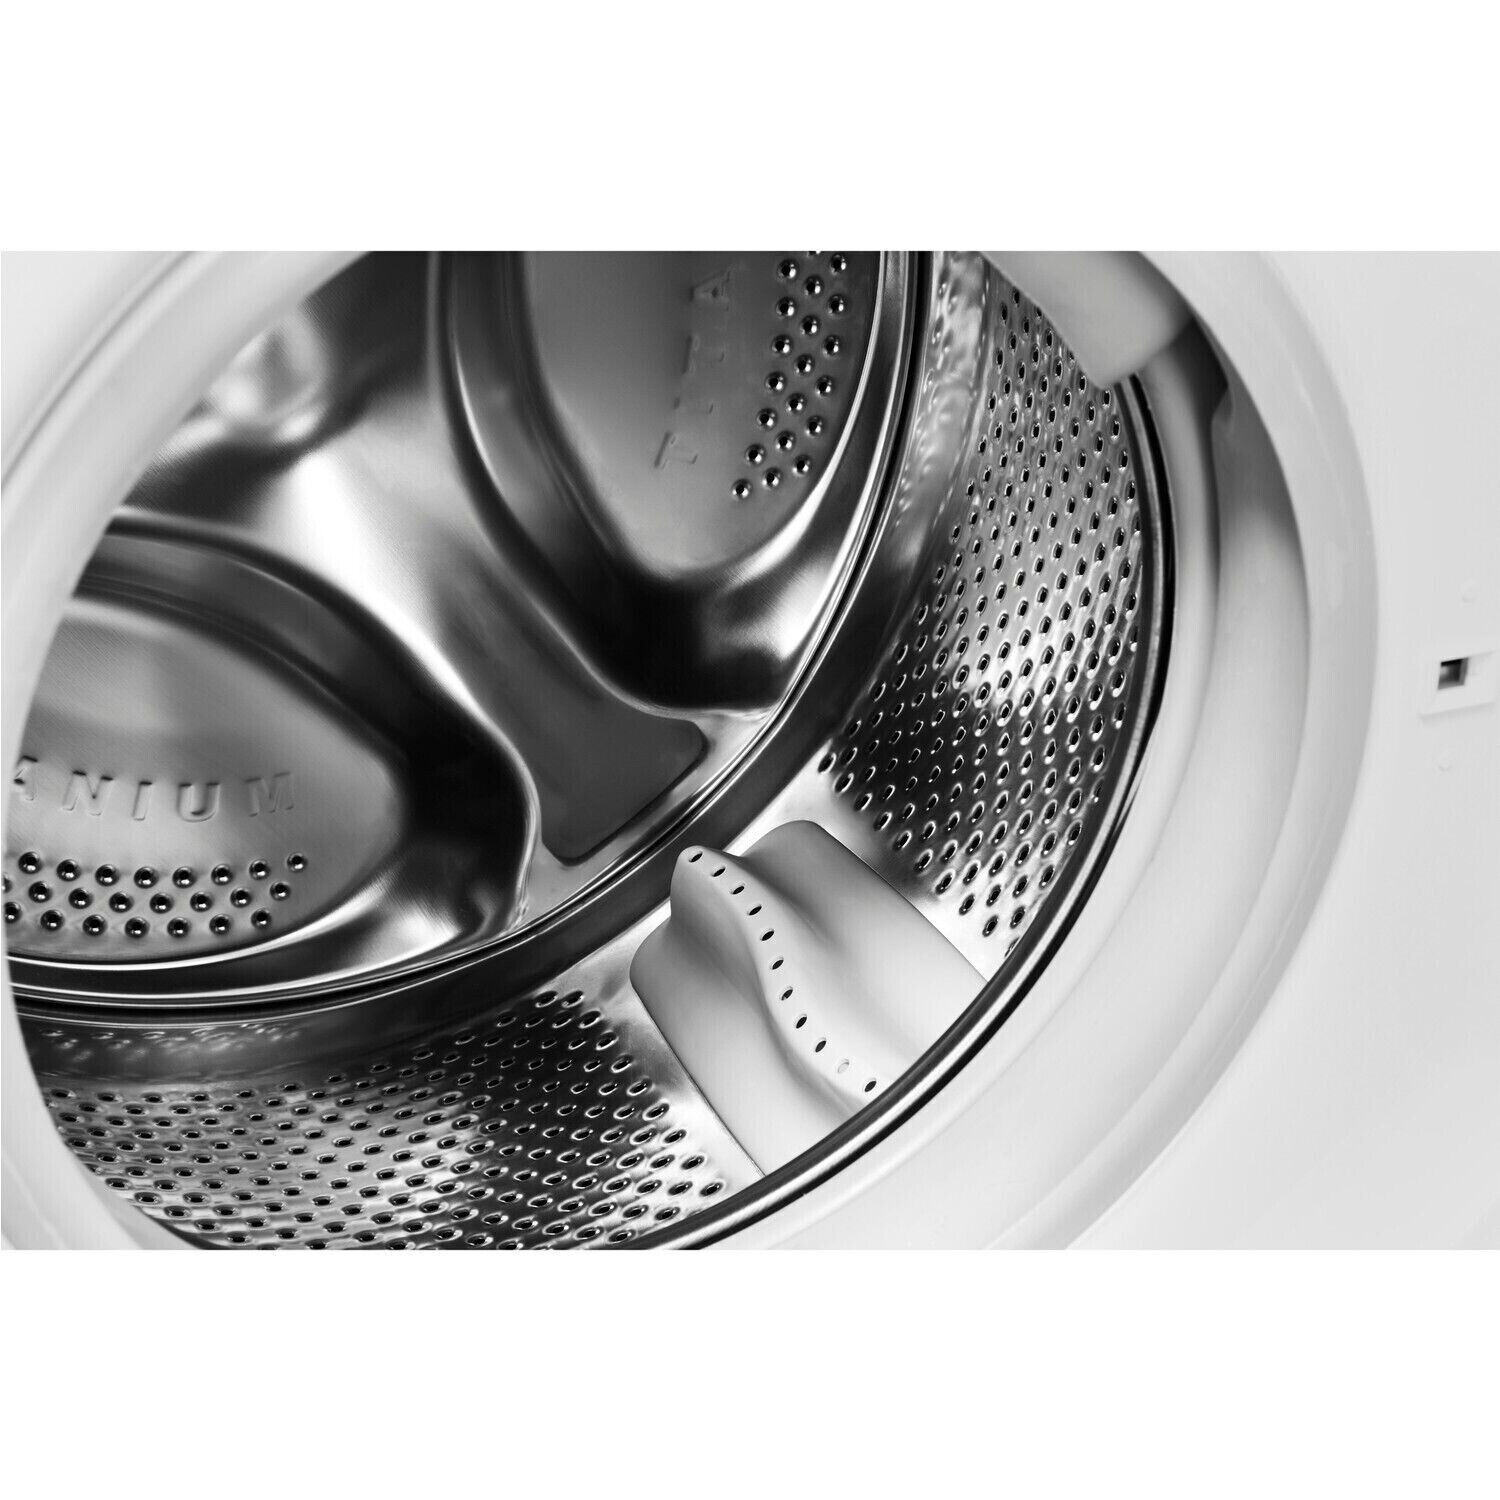 Hotpoint Washer Dryer Washing Machine 9kg RDG9643WUKN 